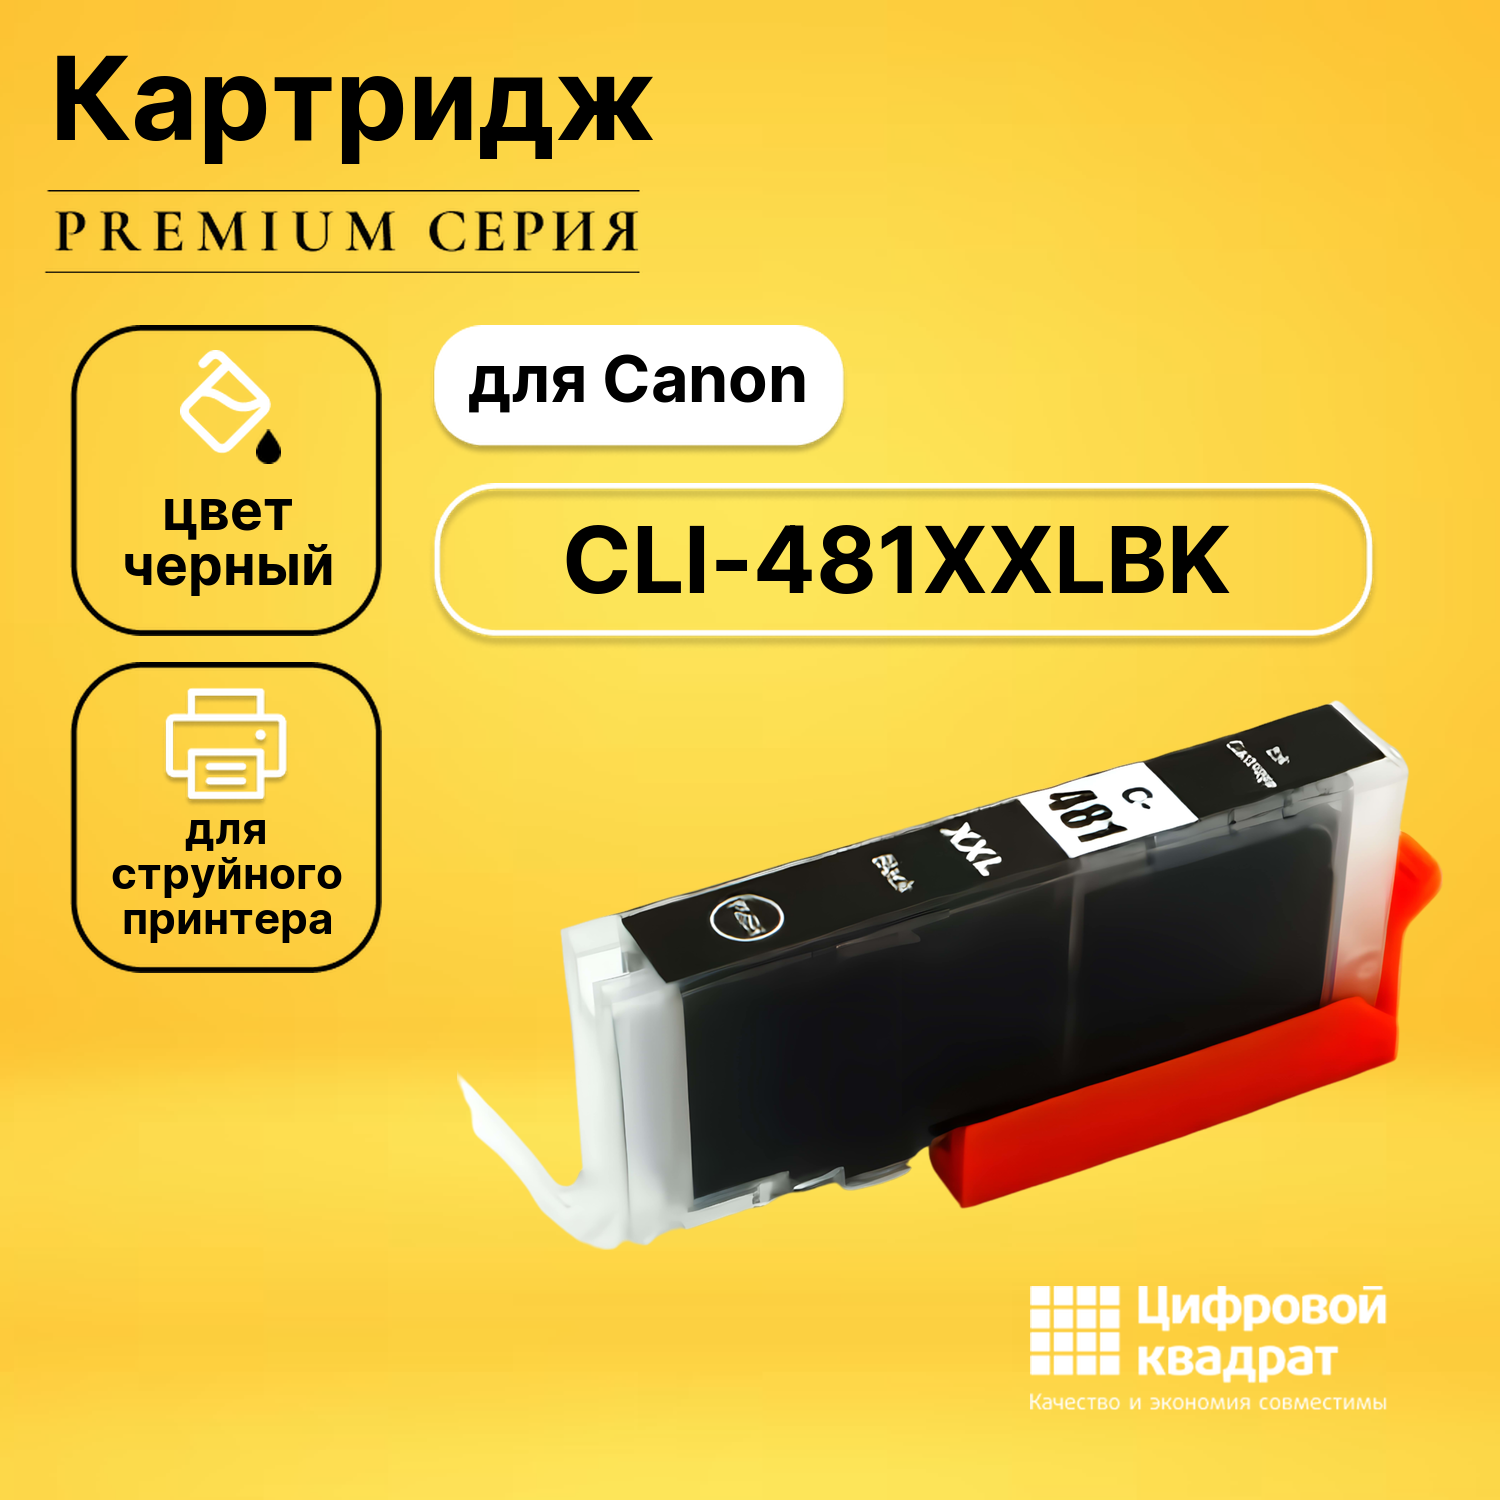 Картридж DS CLI-481XXLBK Canon 1993C001 фото-черный увеличенный ресурс совместимый